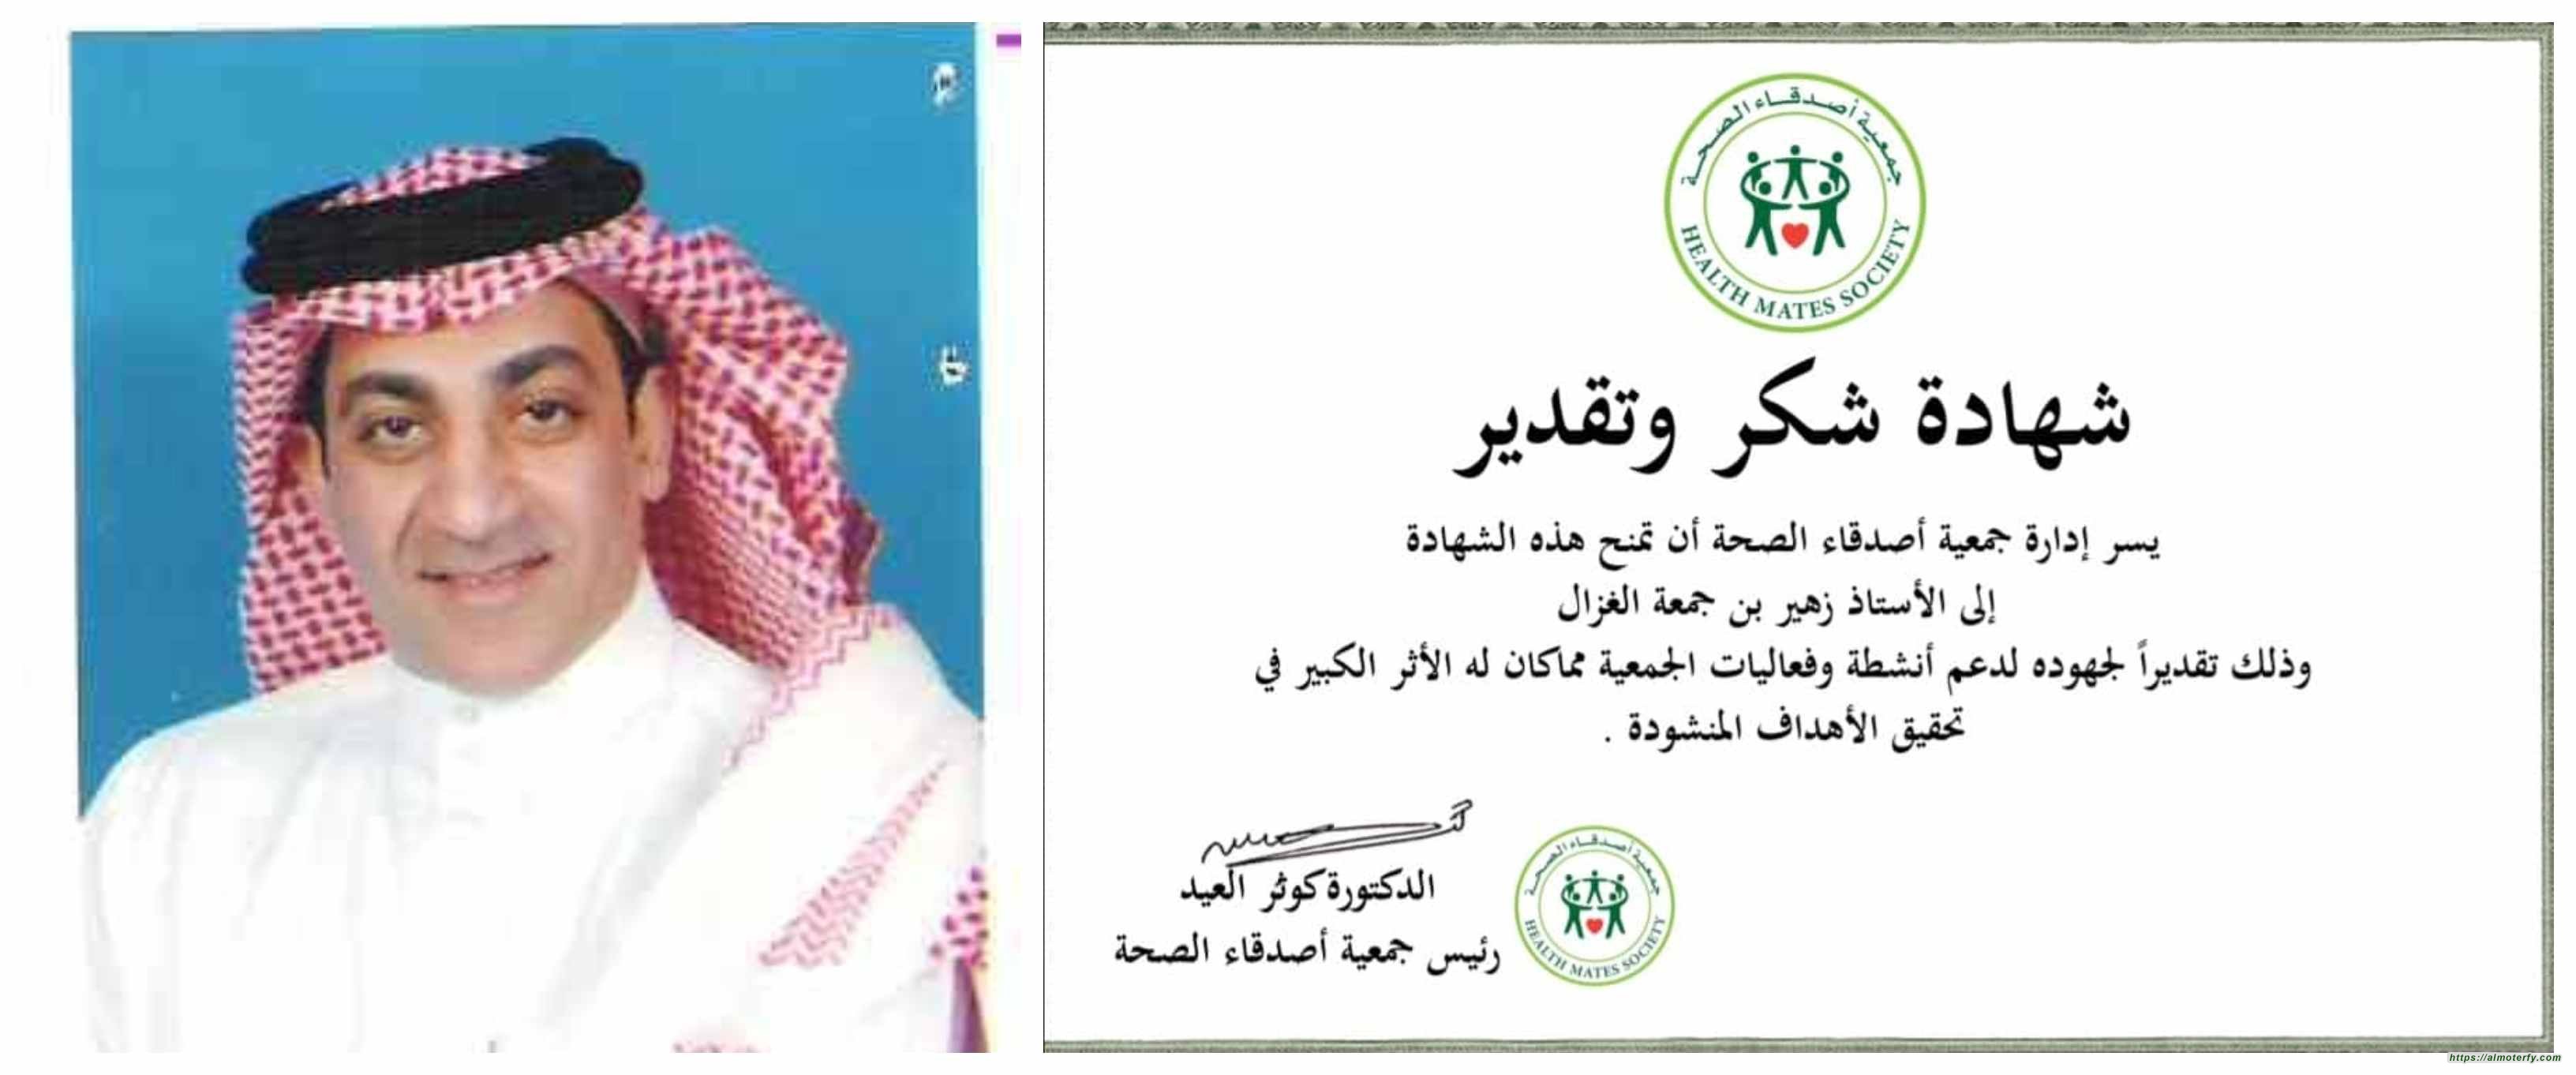 جمعية أصدقاء الصحة في مملكة البحرين تكرم الاعلامي السعودي الزميل زهير الغزال